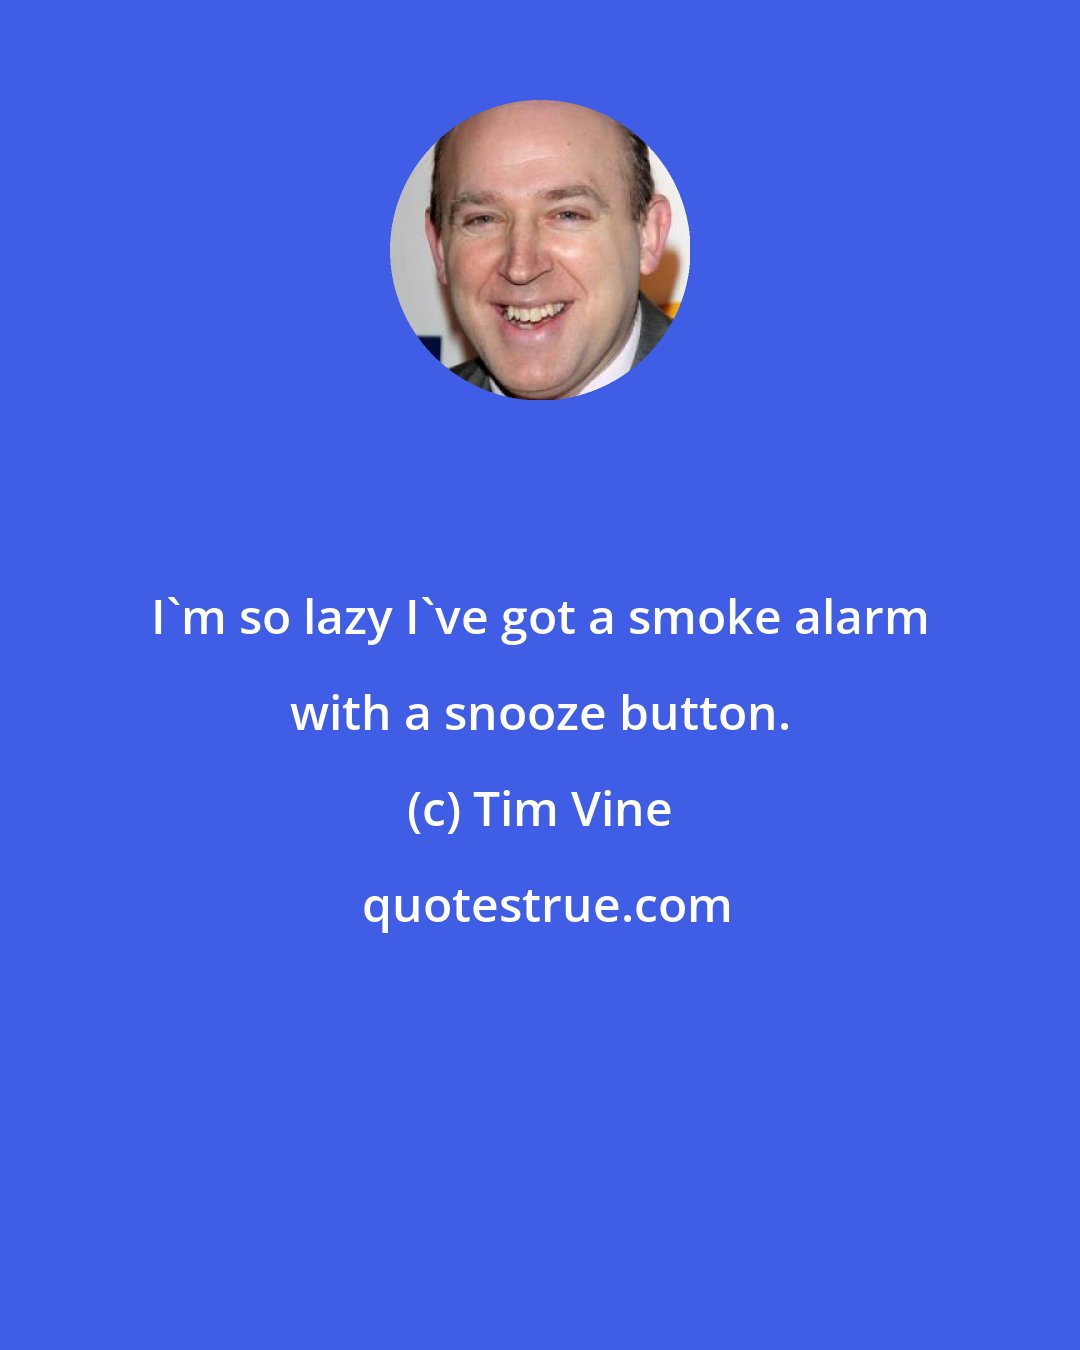 Tim Vine: I'm so lazy I've got a smoke alarm with a snooze button.